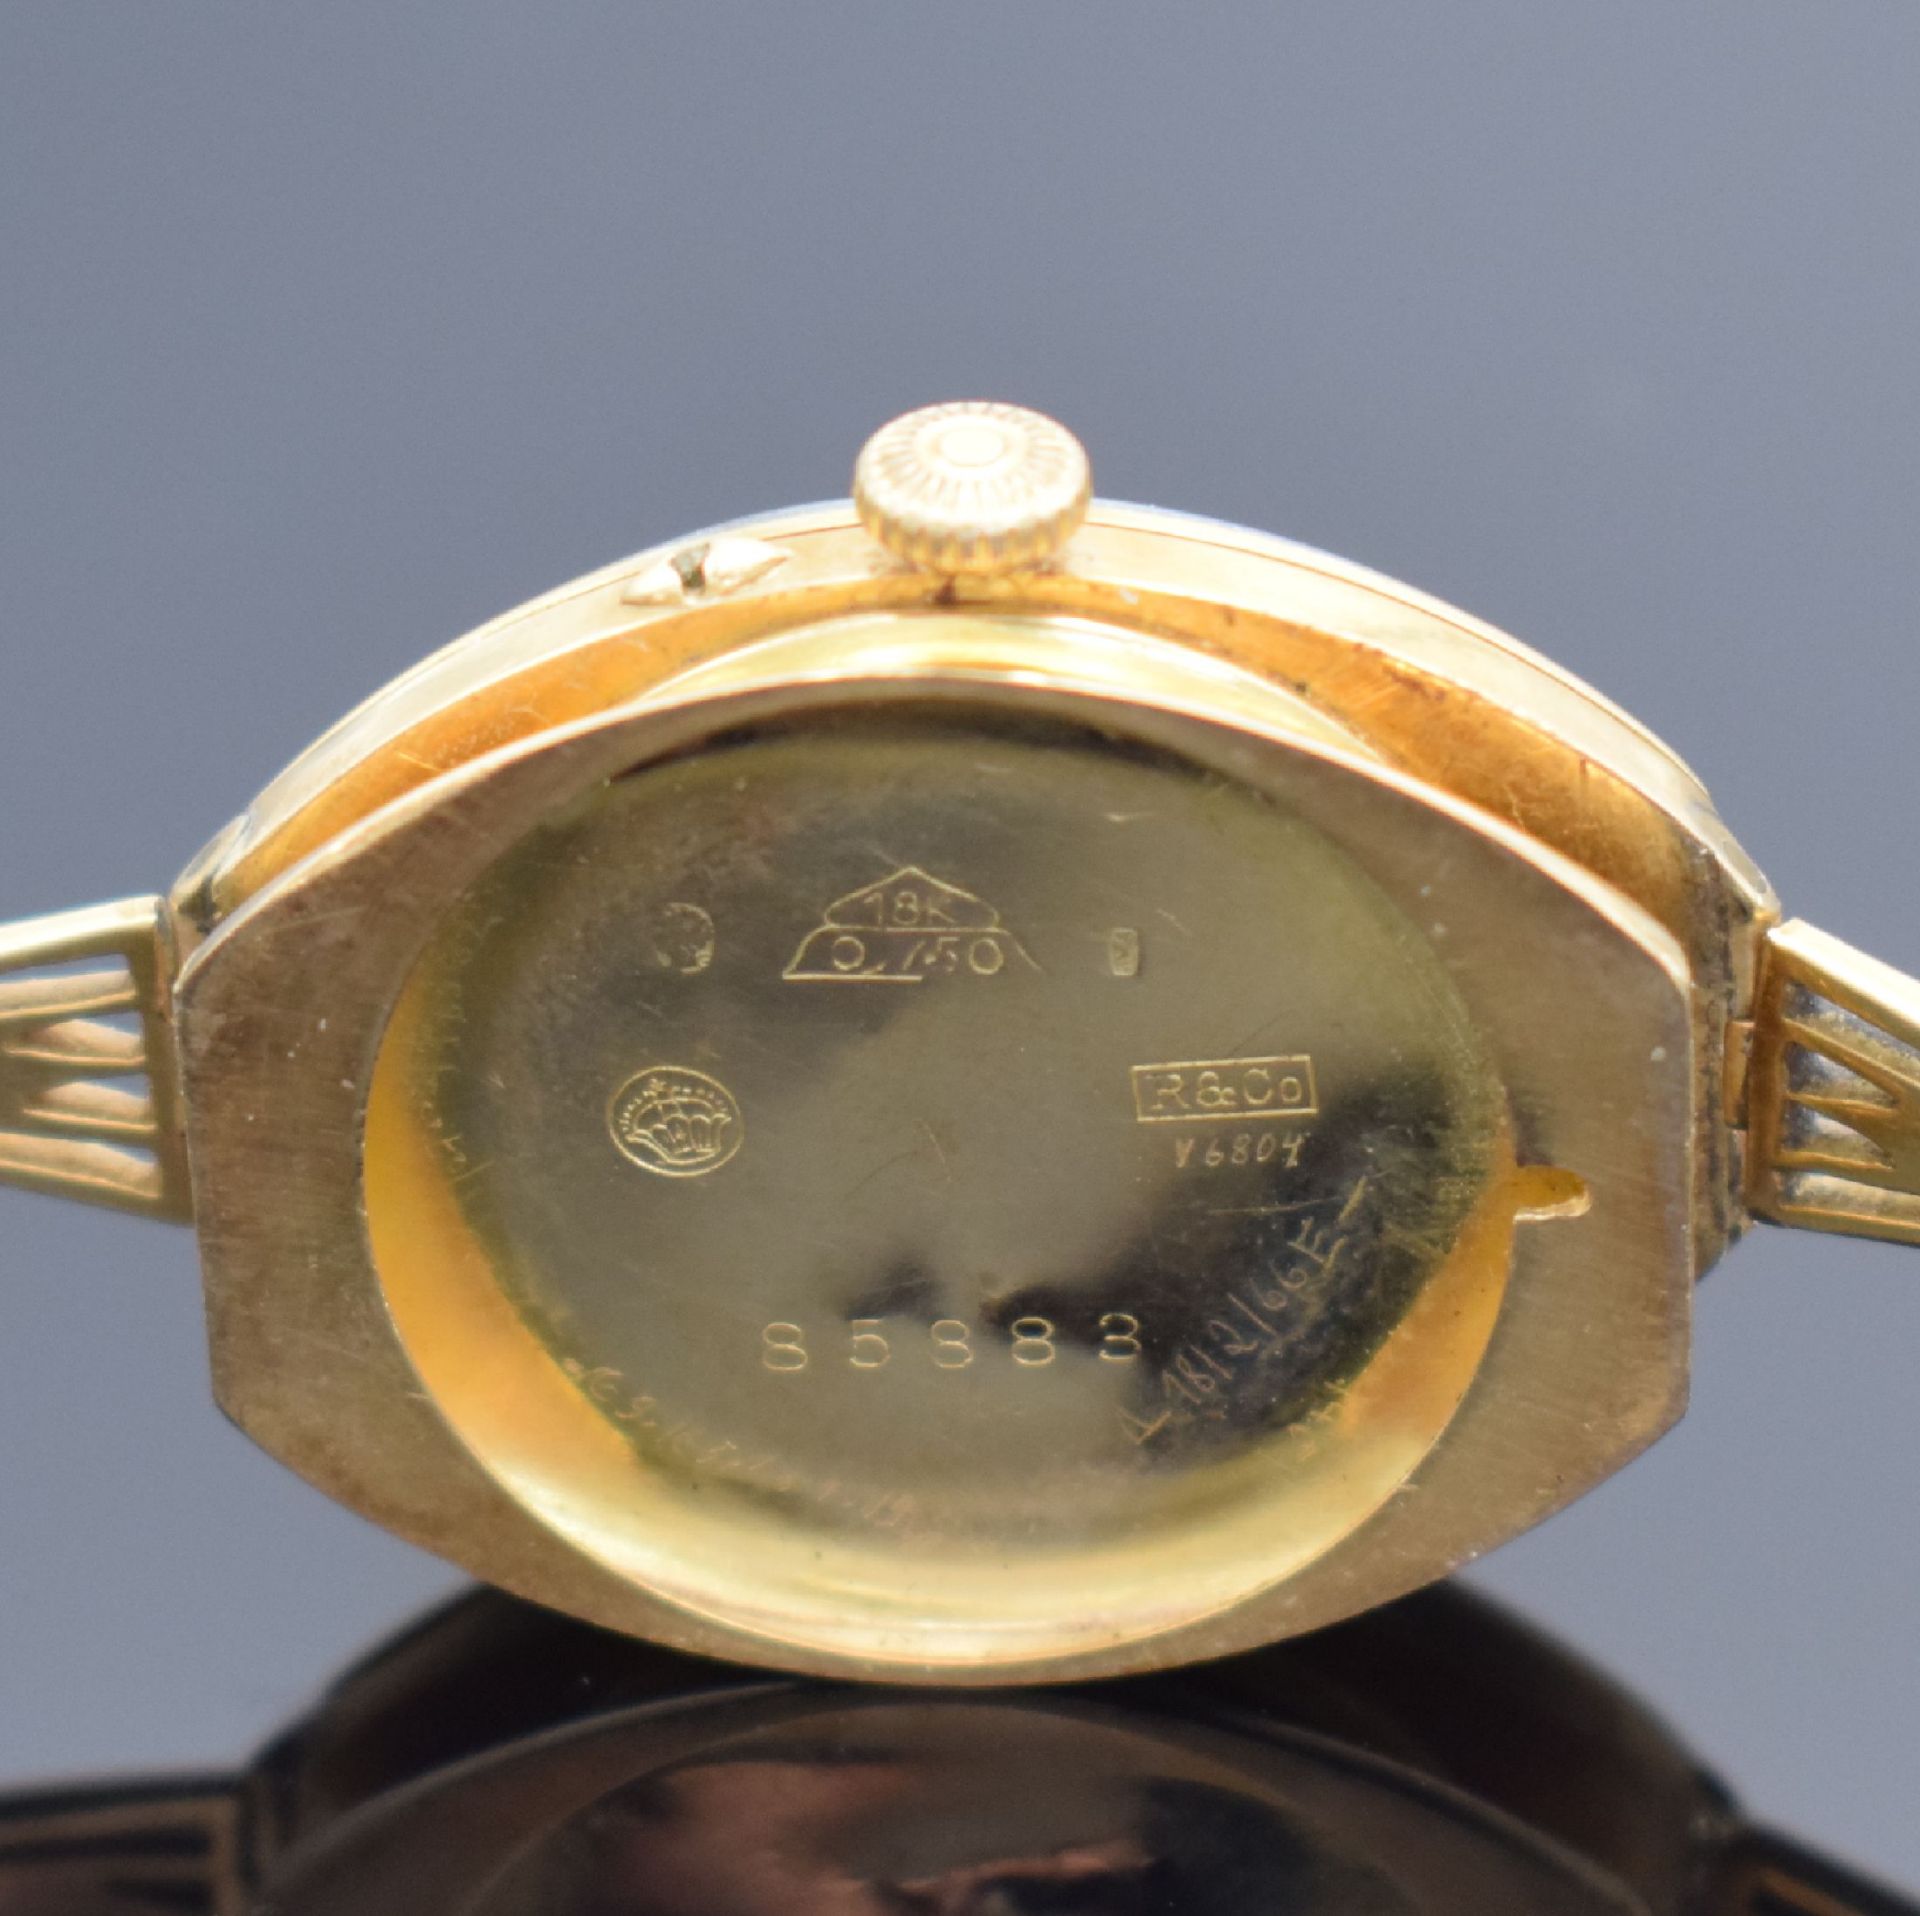 Emaillierte Armbanduhr in GG 750/000, Schweiz um 1900, - Image 7 of 7